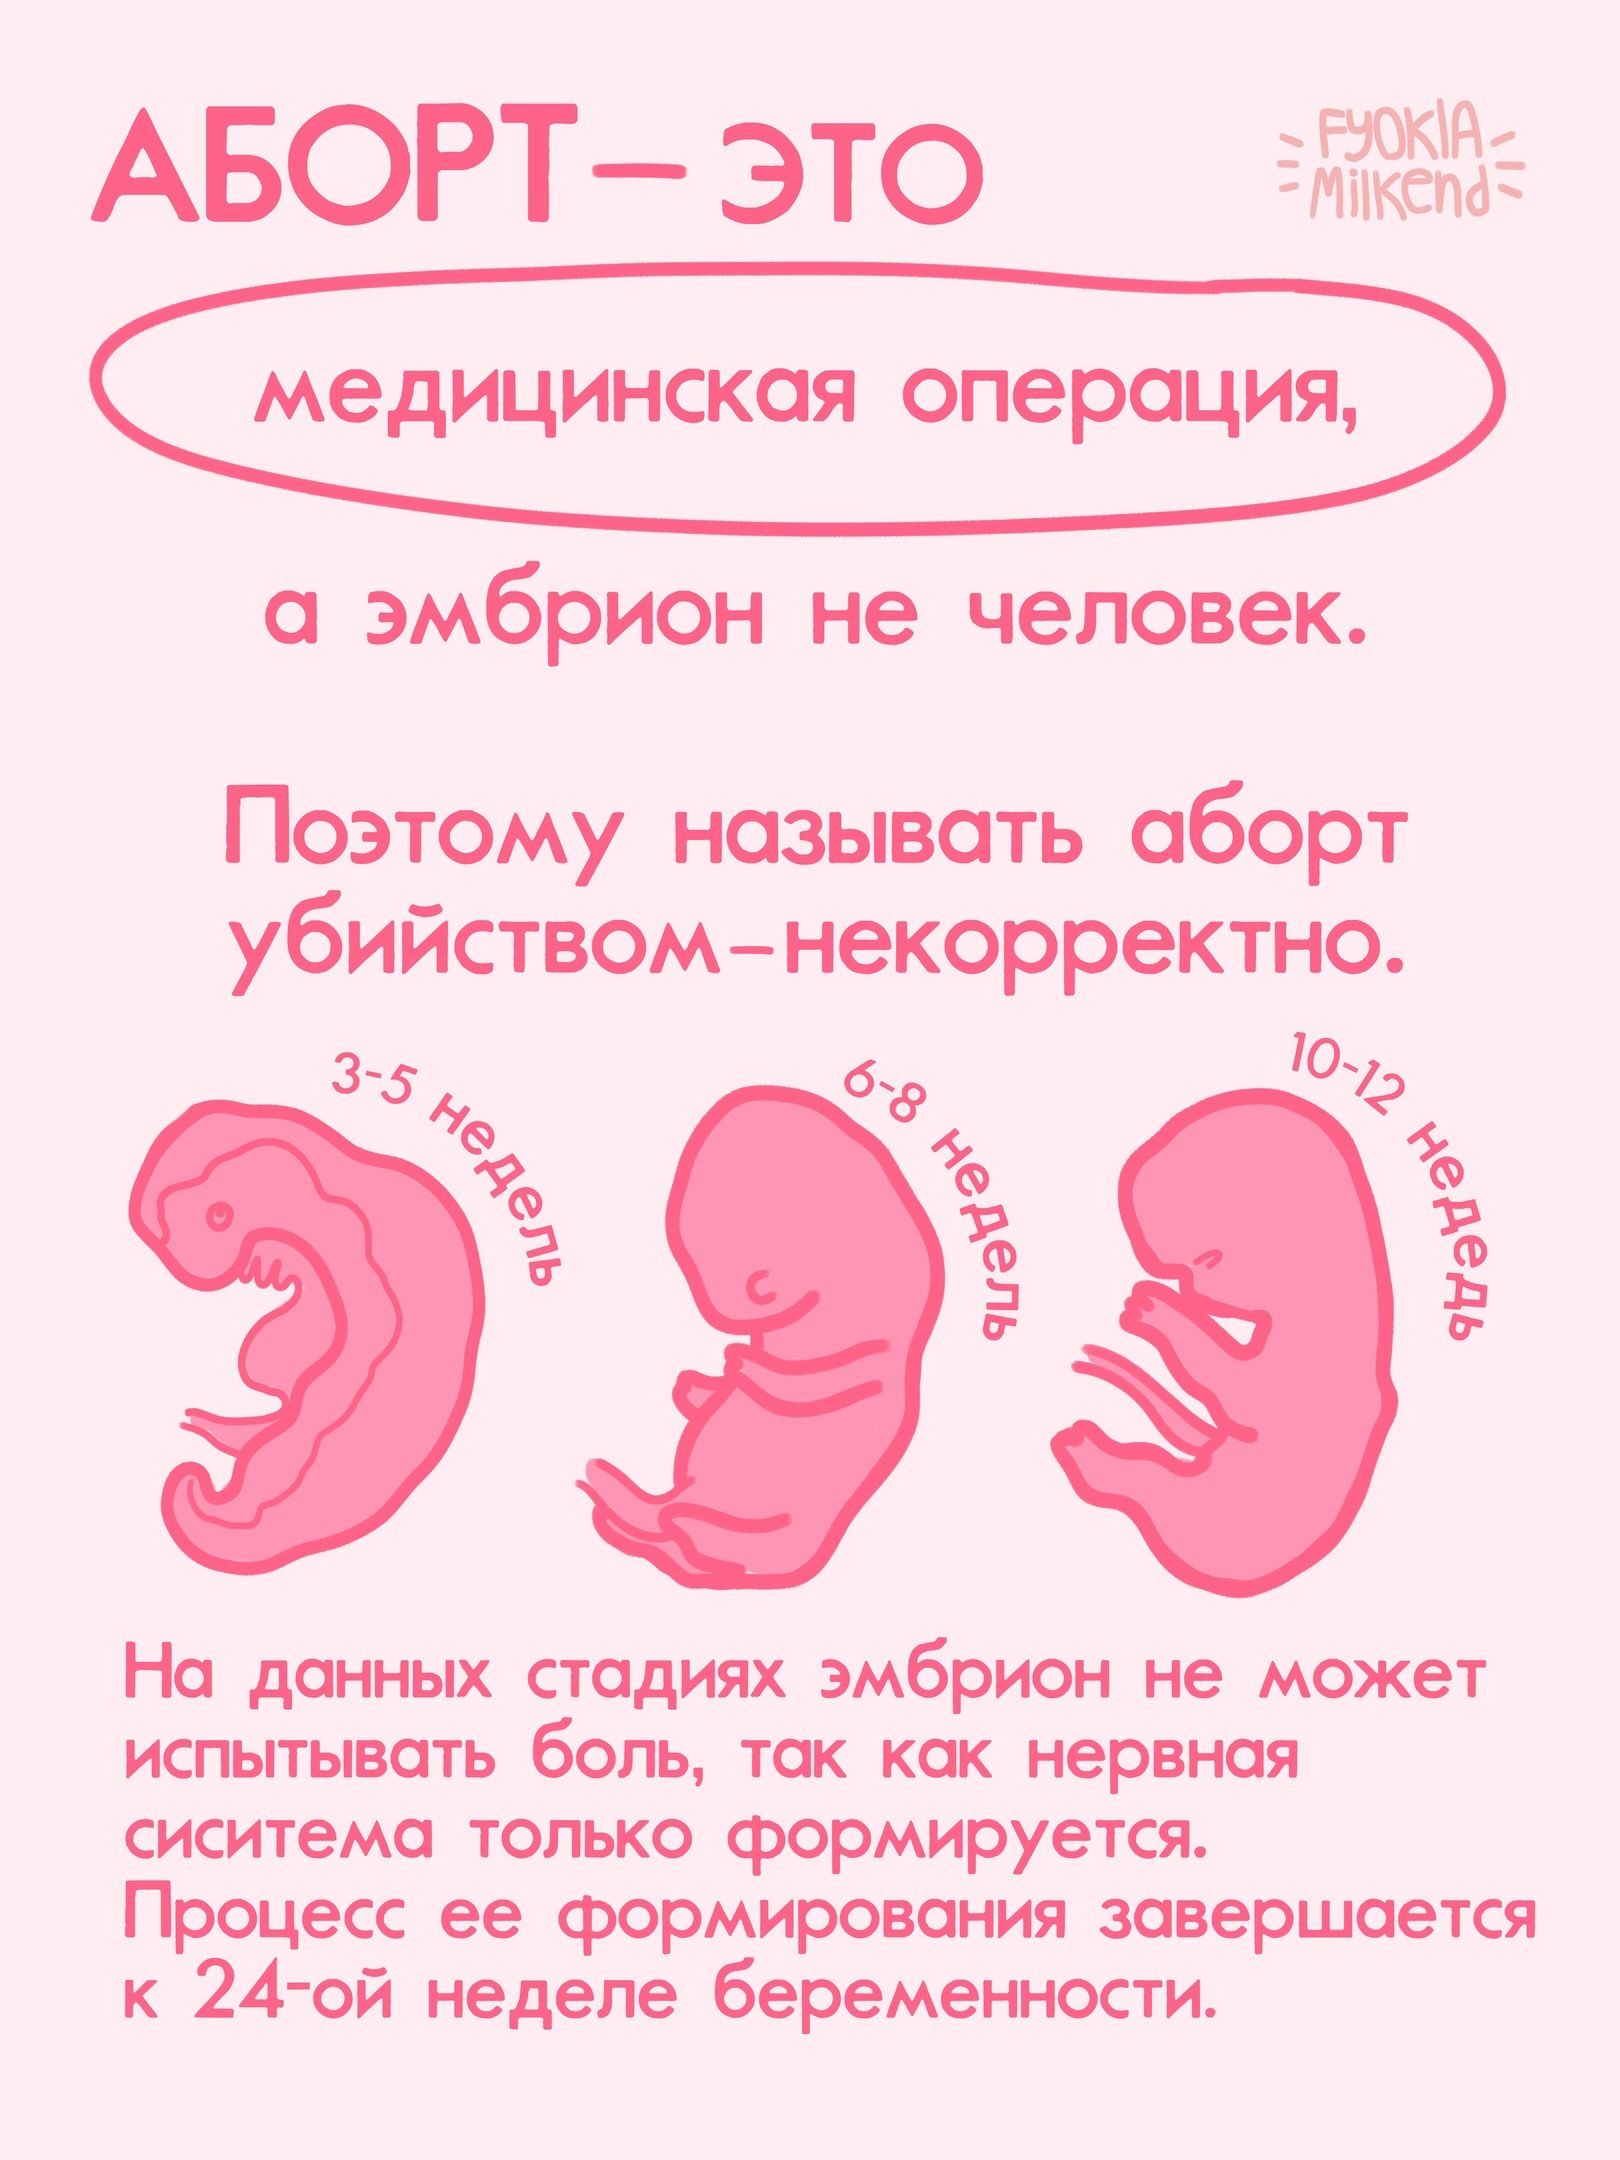 Неделя трех л. Борт. Прерывание беременности - аборт. Недели беременности по месяцам. Прерывание беременности до 12 недель и после.